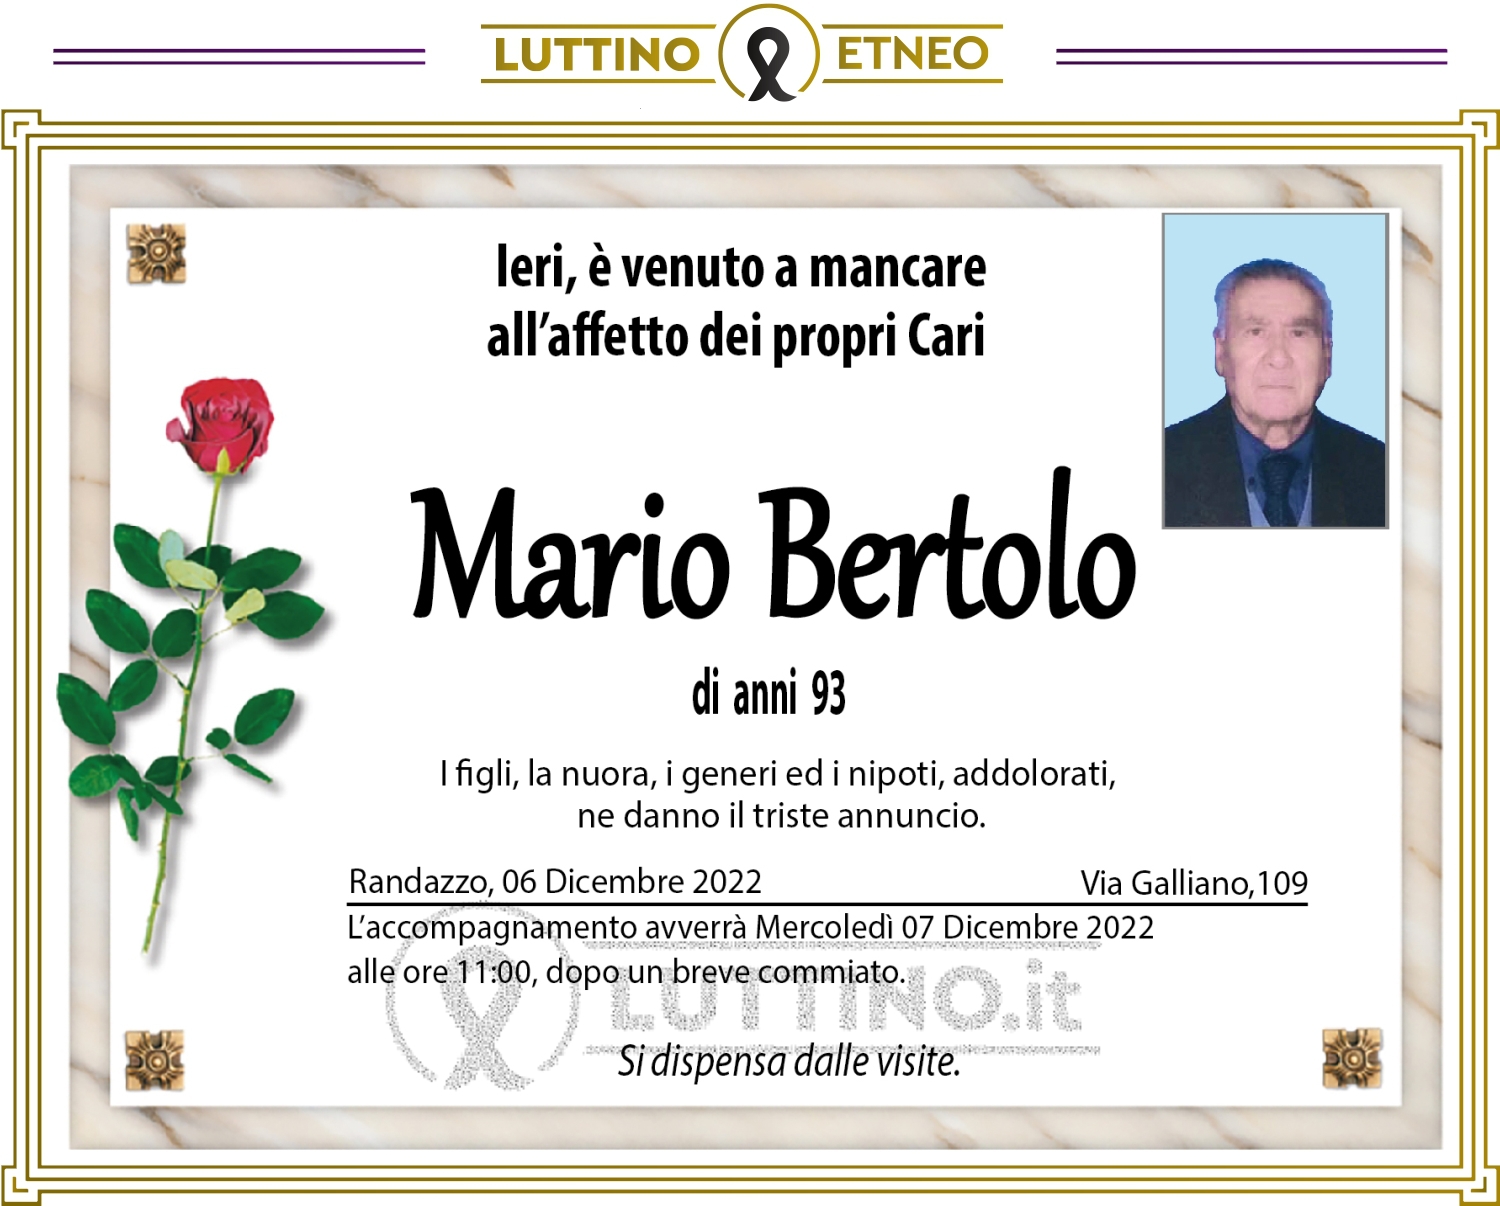 Mario Bertolo